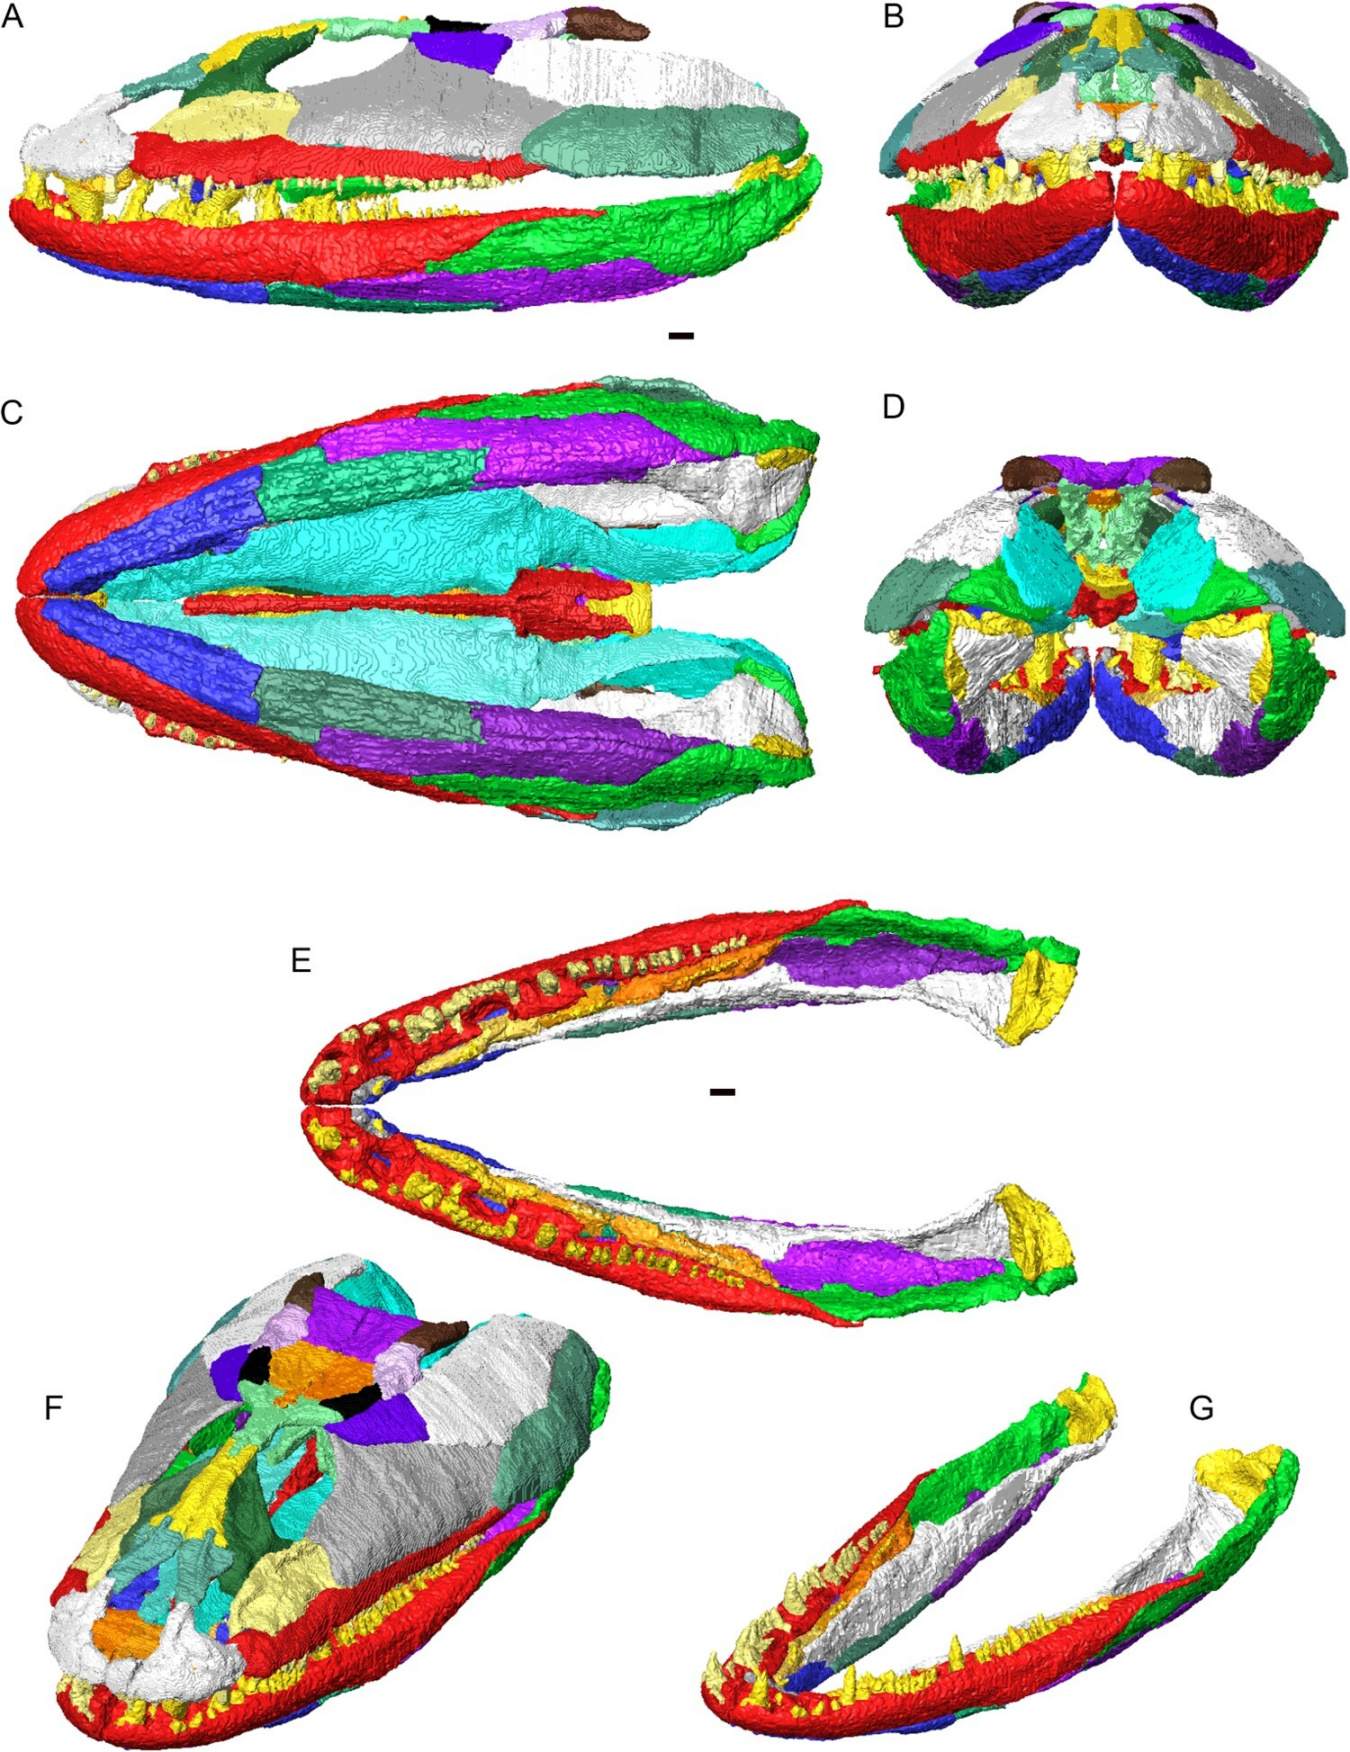 Crassigyrinus scoticus'un kafatası ve alt çenelerinin artikülasyon halinde 3 boyutlu rekonstrüksiyonu. Farklı renklerde gösterilen bireysel kemikler. A, sol yan görünüm; B, önden görünüm; C, ventral görünüm; D, arkadan görünüm; E, dorsal görünümde mafsallı alt çeneler (kafatası yok); F, dorsolateral eğik görünümde kafatası ve alt çene; G, dorsolateral eğik görünümde mafsallı alt çeneler.